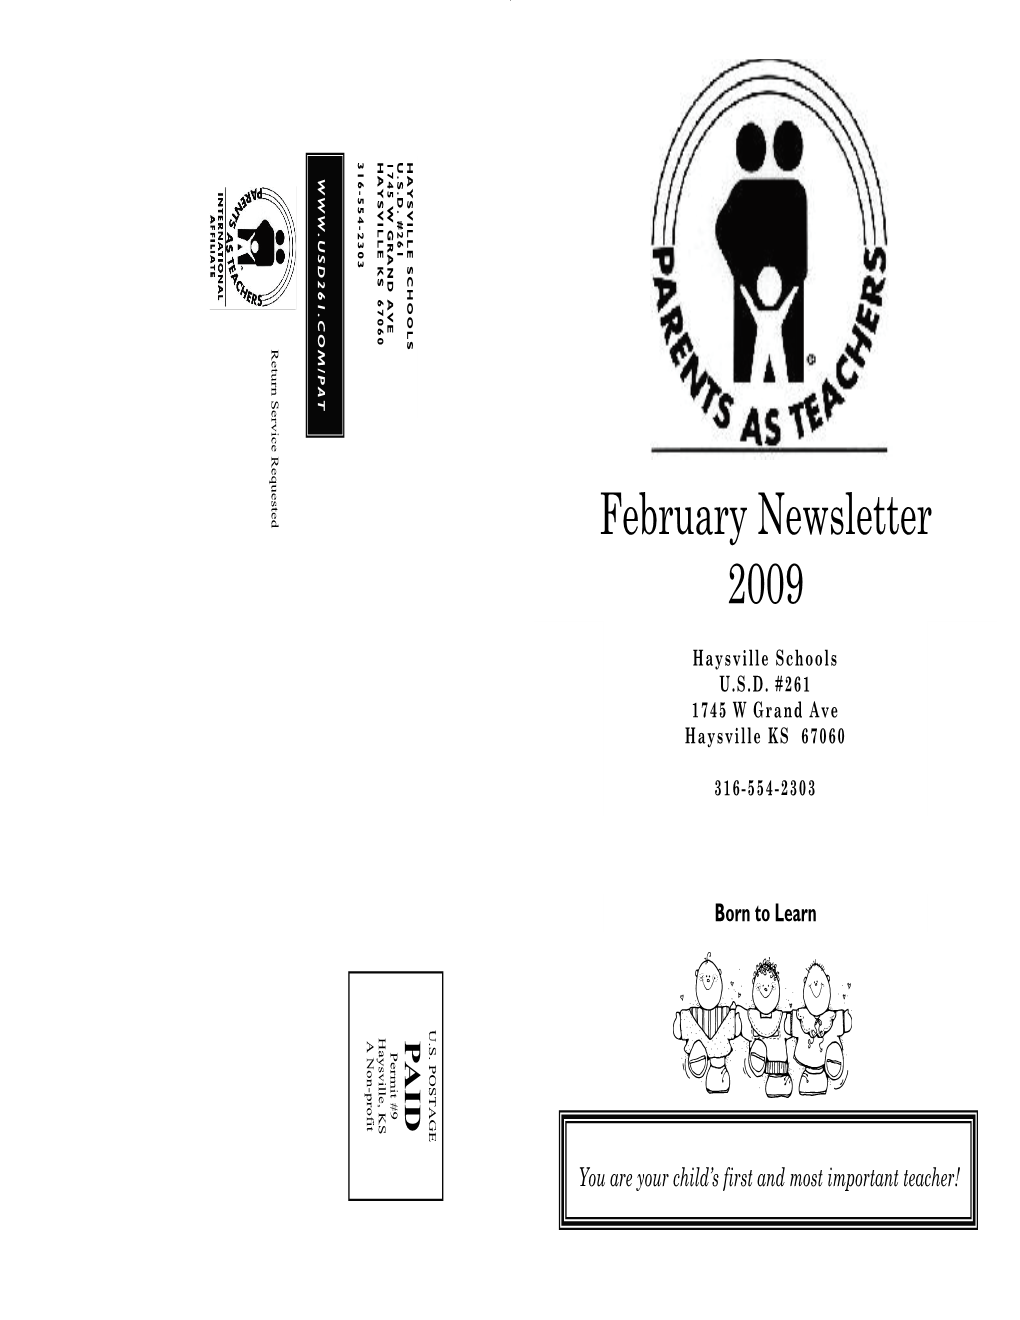 February Newsletter 2009